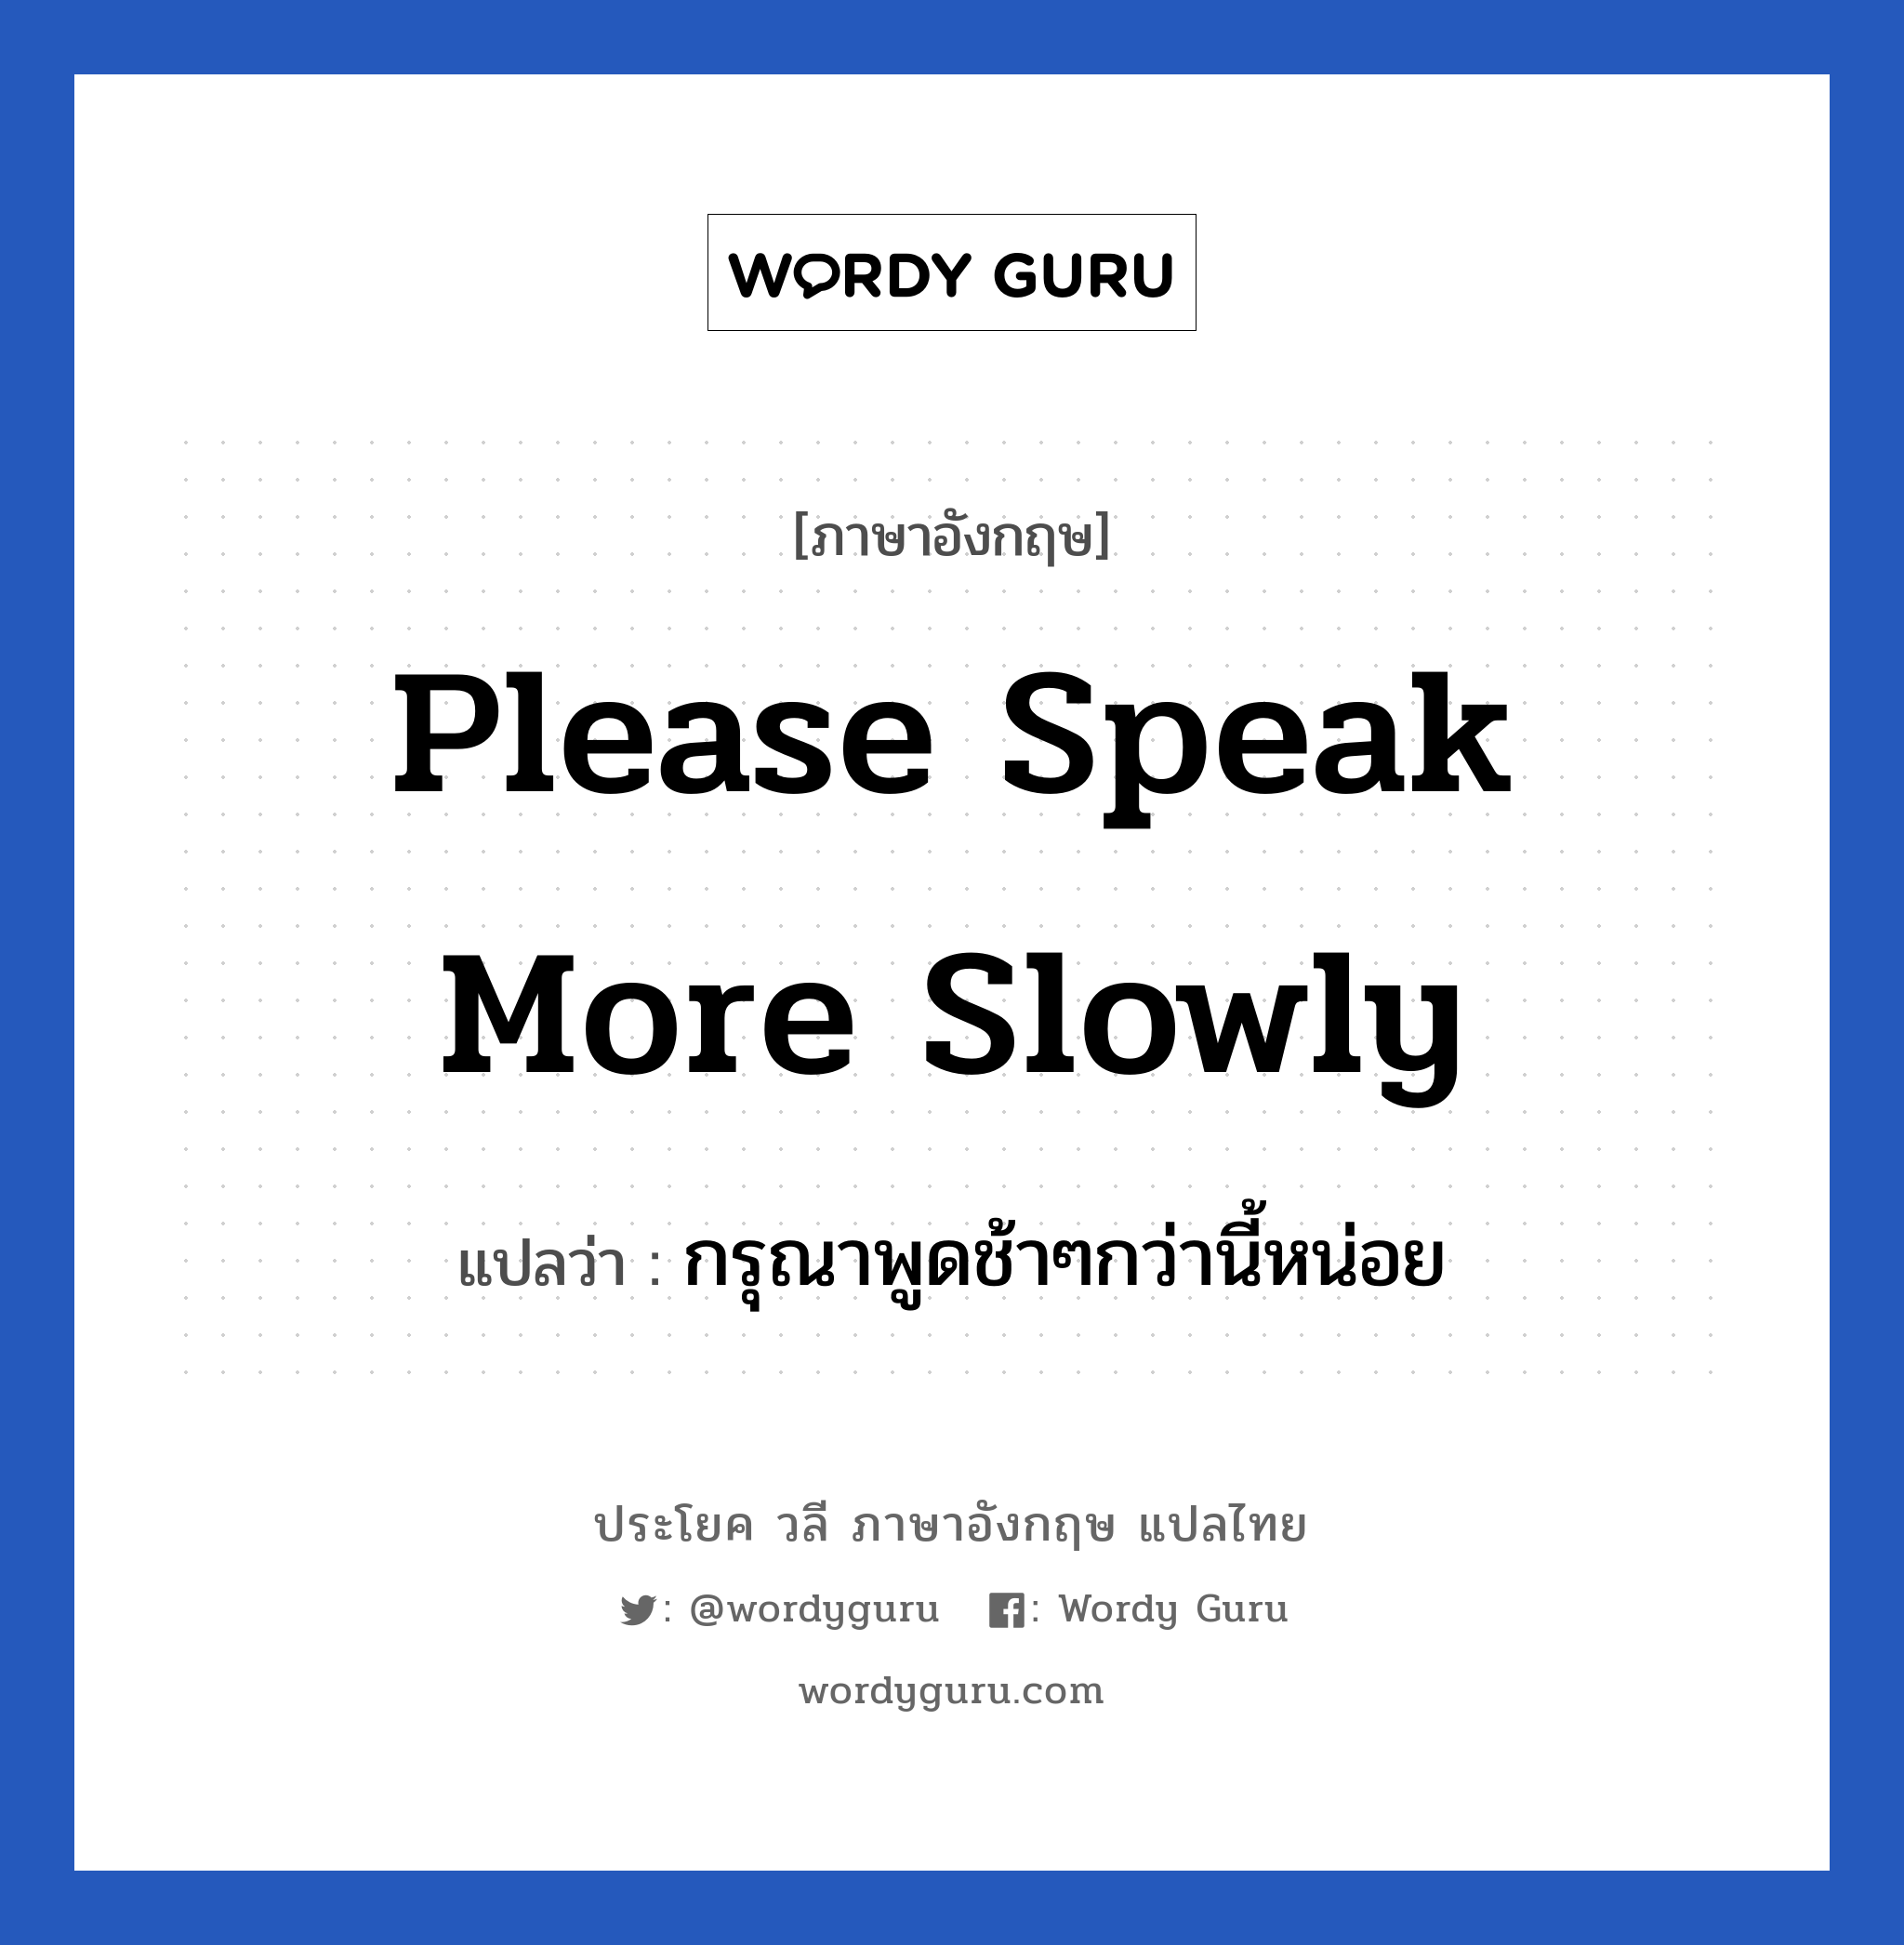 กรุณาพูดช้าๆกว่านี้หน่อย ภาษาอังกฤษ?, วลีภาษาอังกฤษ กรุณาพูดช้าๆกว่านี้หน่อย แปลว่า Please speak more slowly